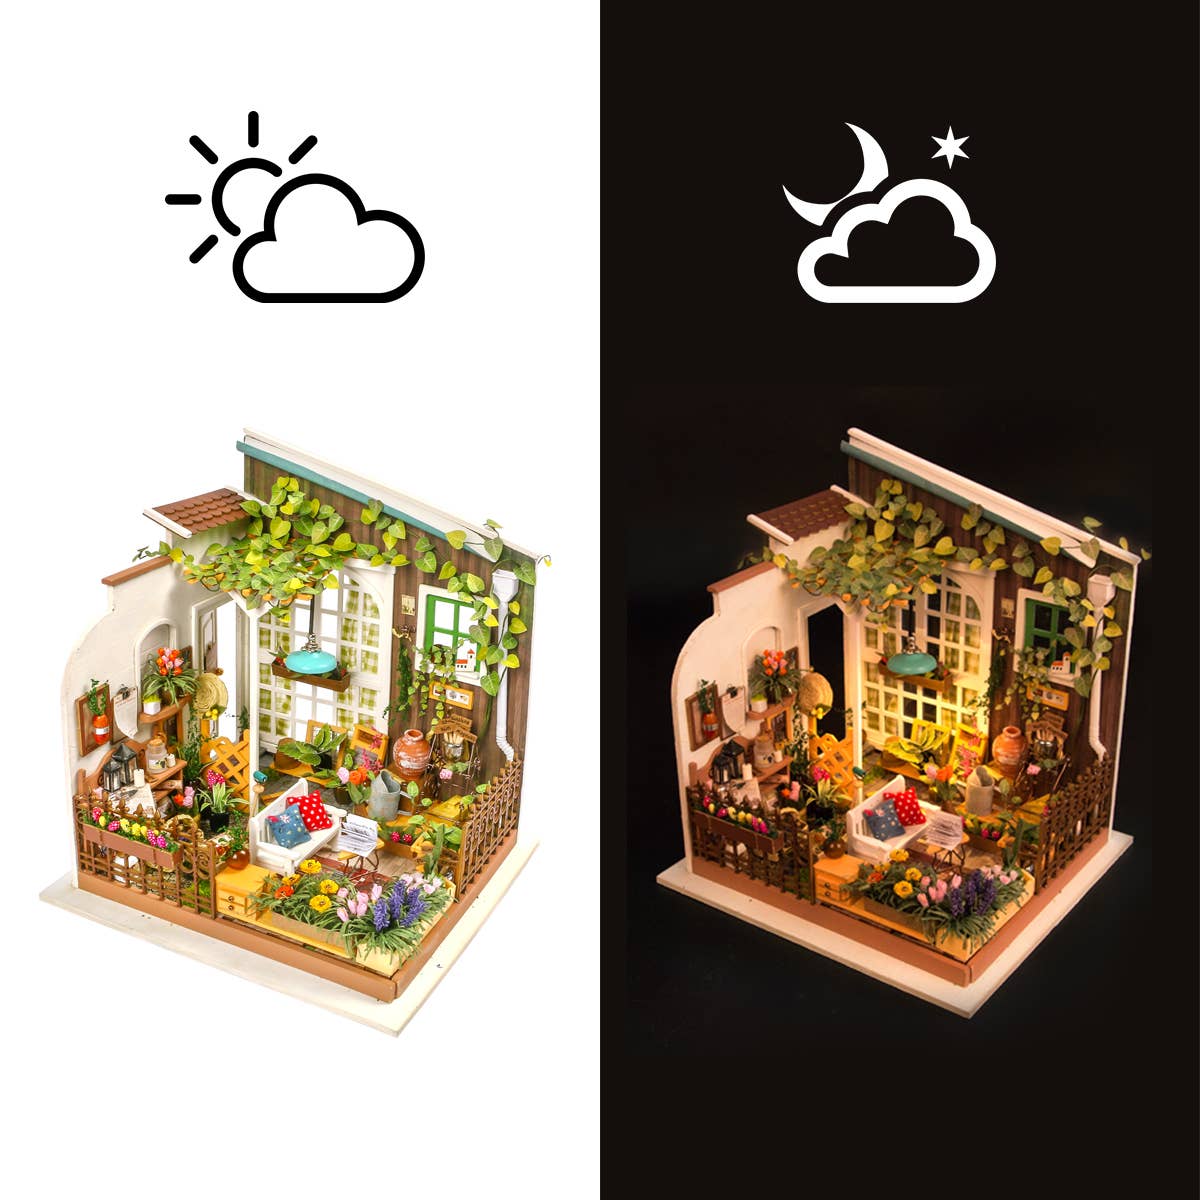 DIY Miniature Model Kit: Miller's Garden